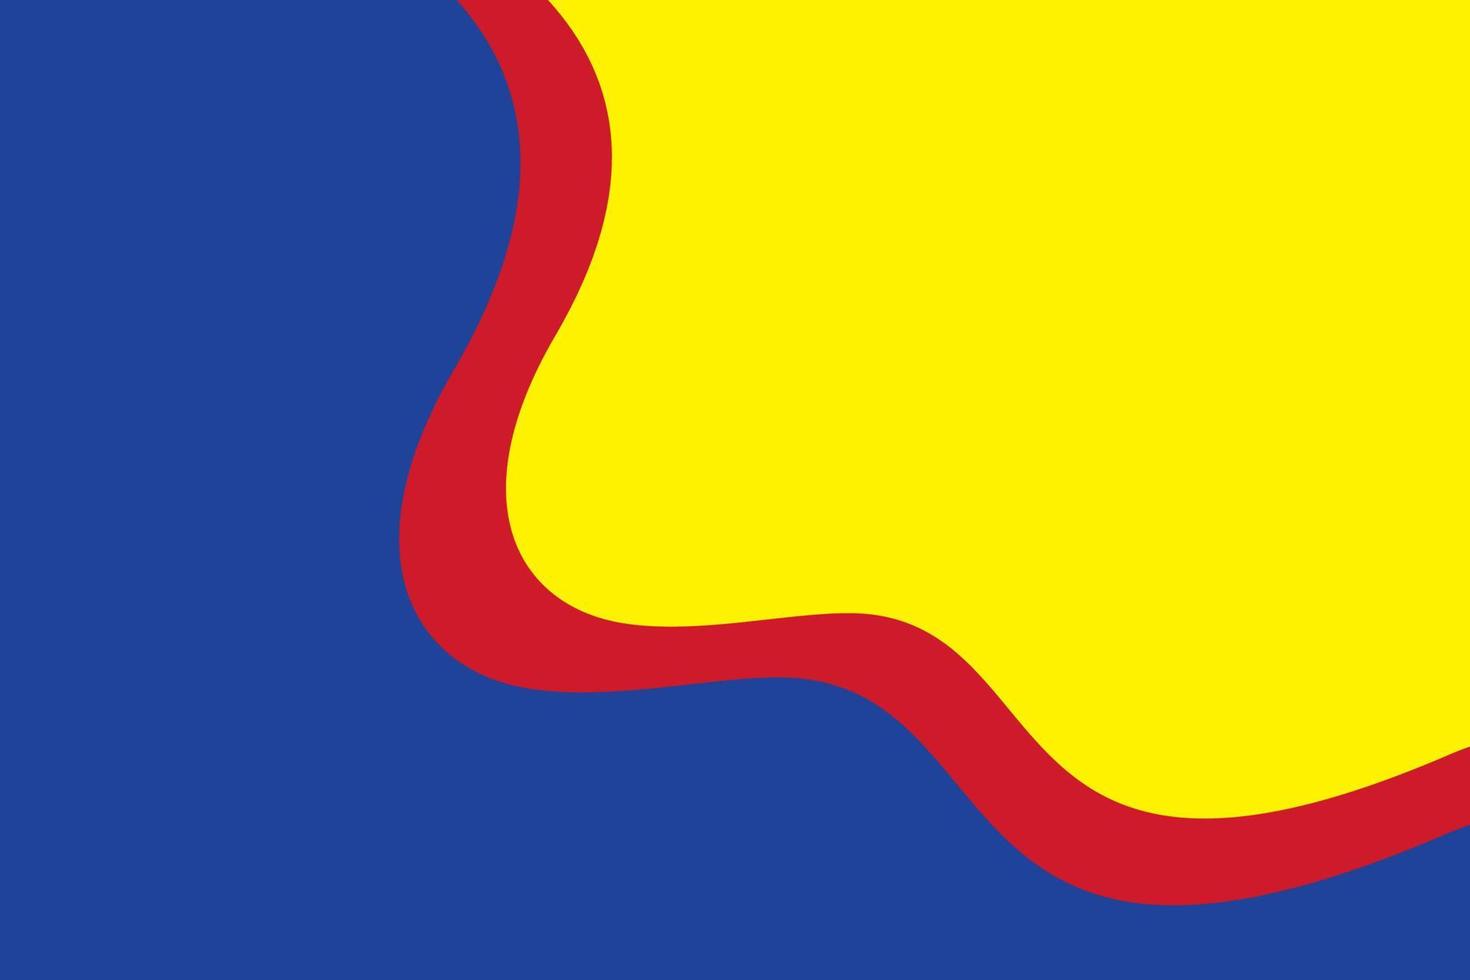 Grundfarben Hintergrund, Blau, Rot und Gelb in runder Form. Vektor-Illustration. vektor